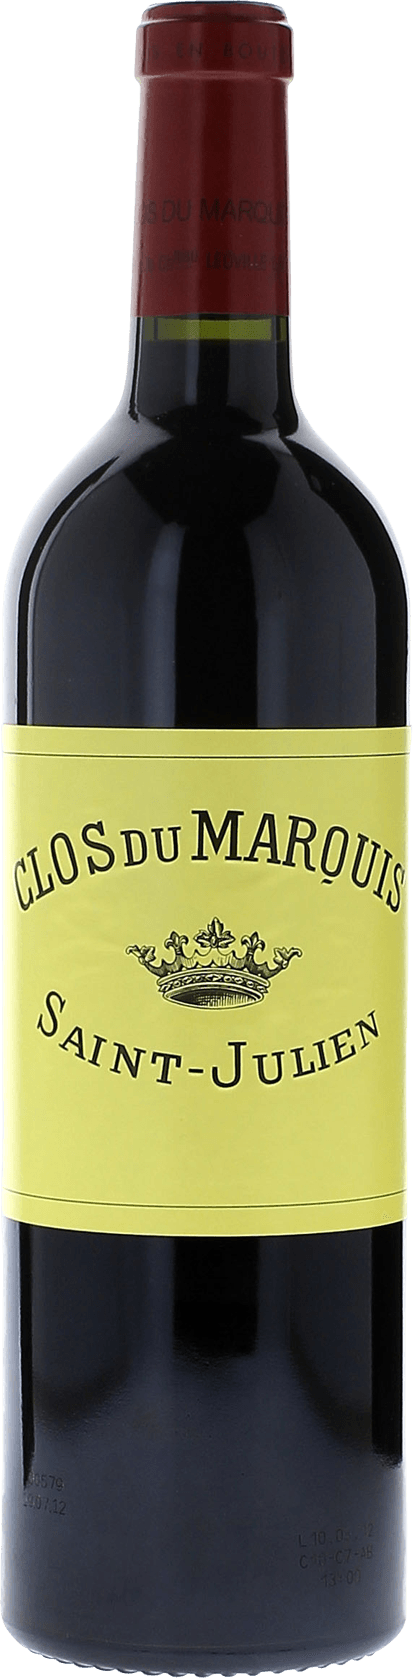 Clos du marquis 2000 2me vin de LEOVILLE LAS CASES Saint-Julien, Bordeaux rouge